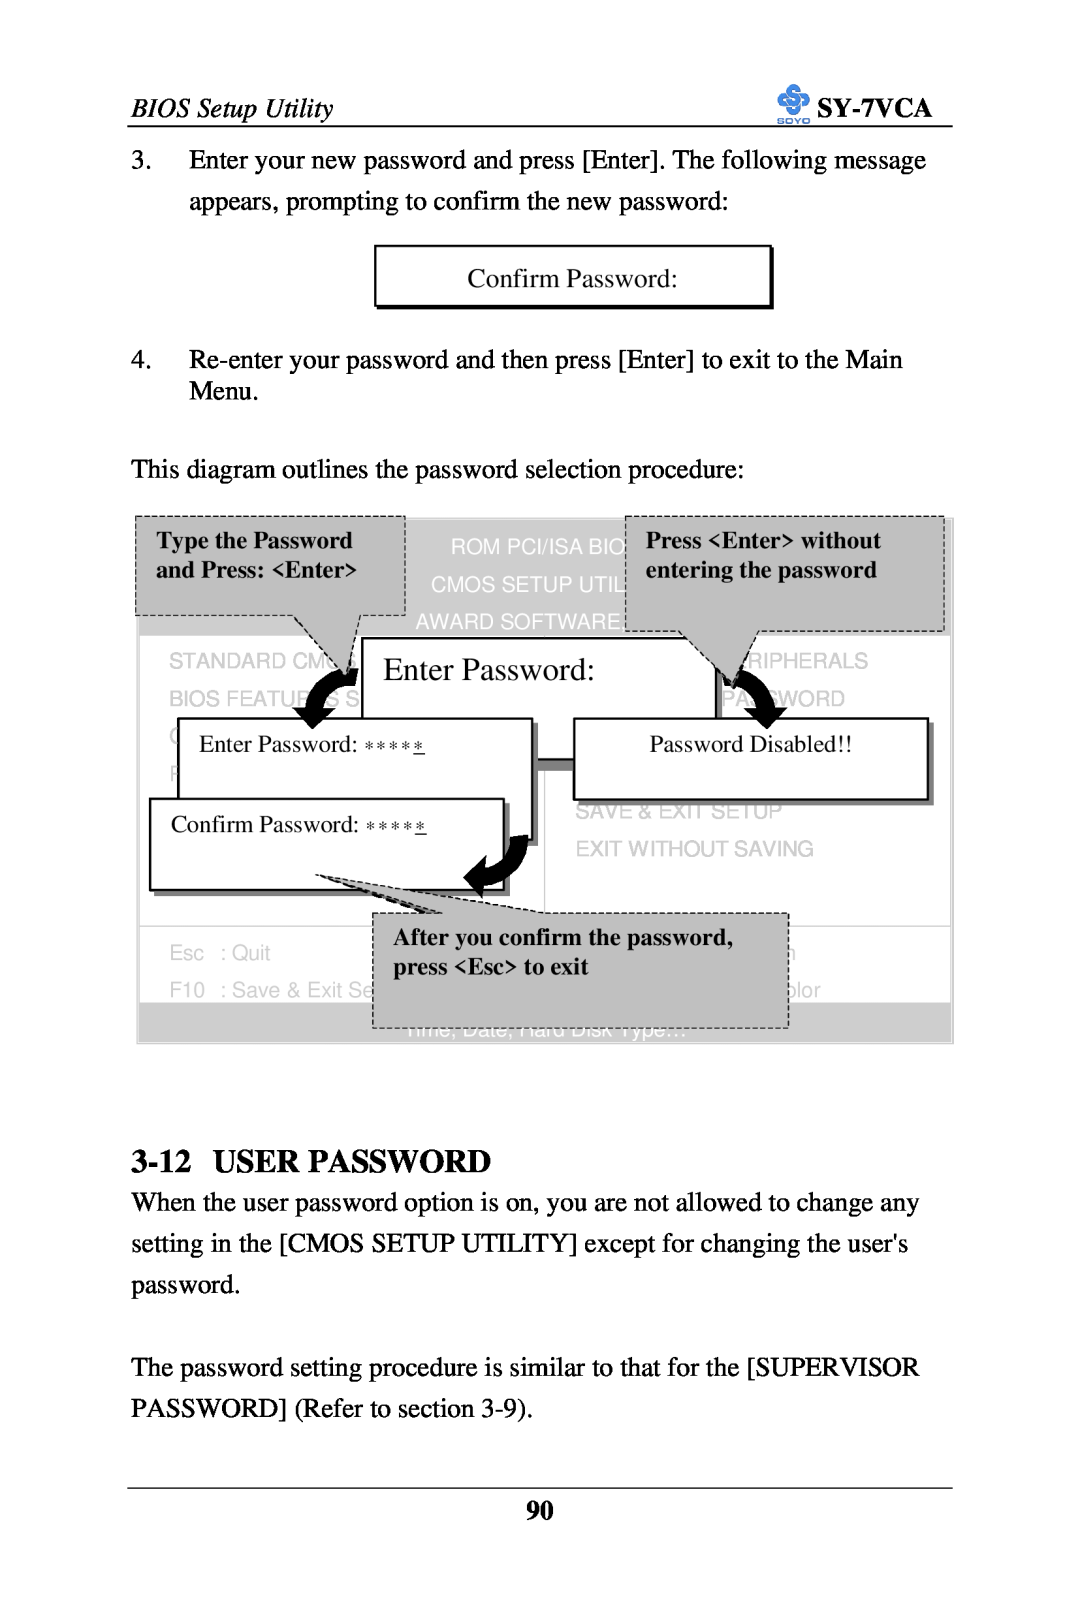 SOYO SY-7VCA user manual User Password, Enter Password 